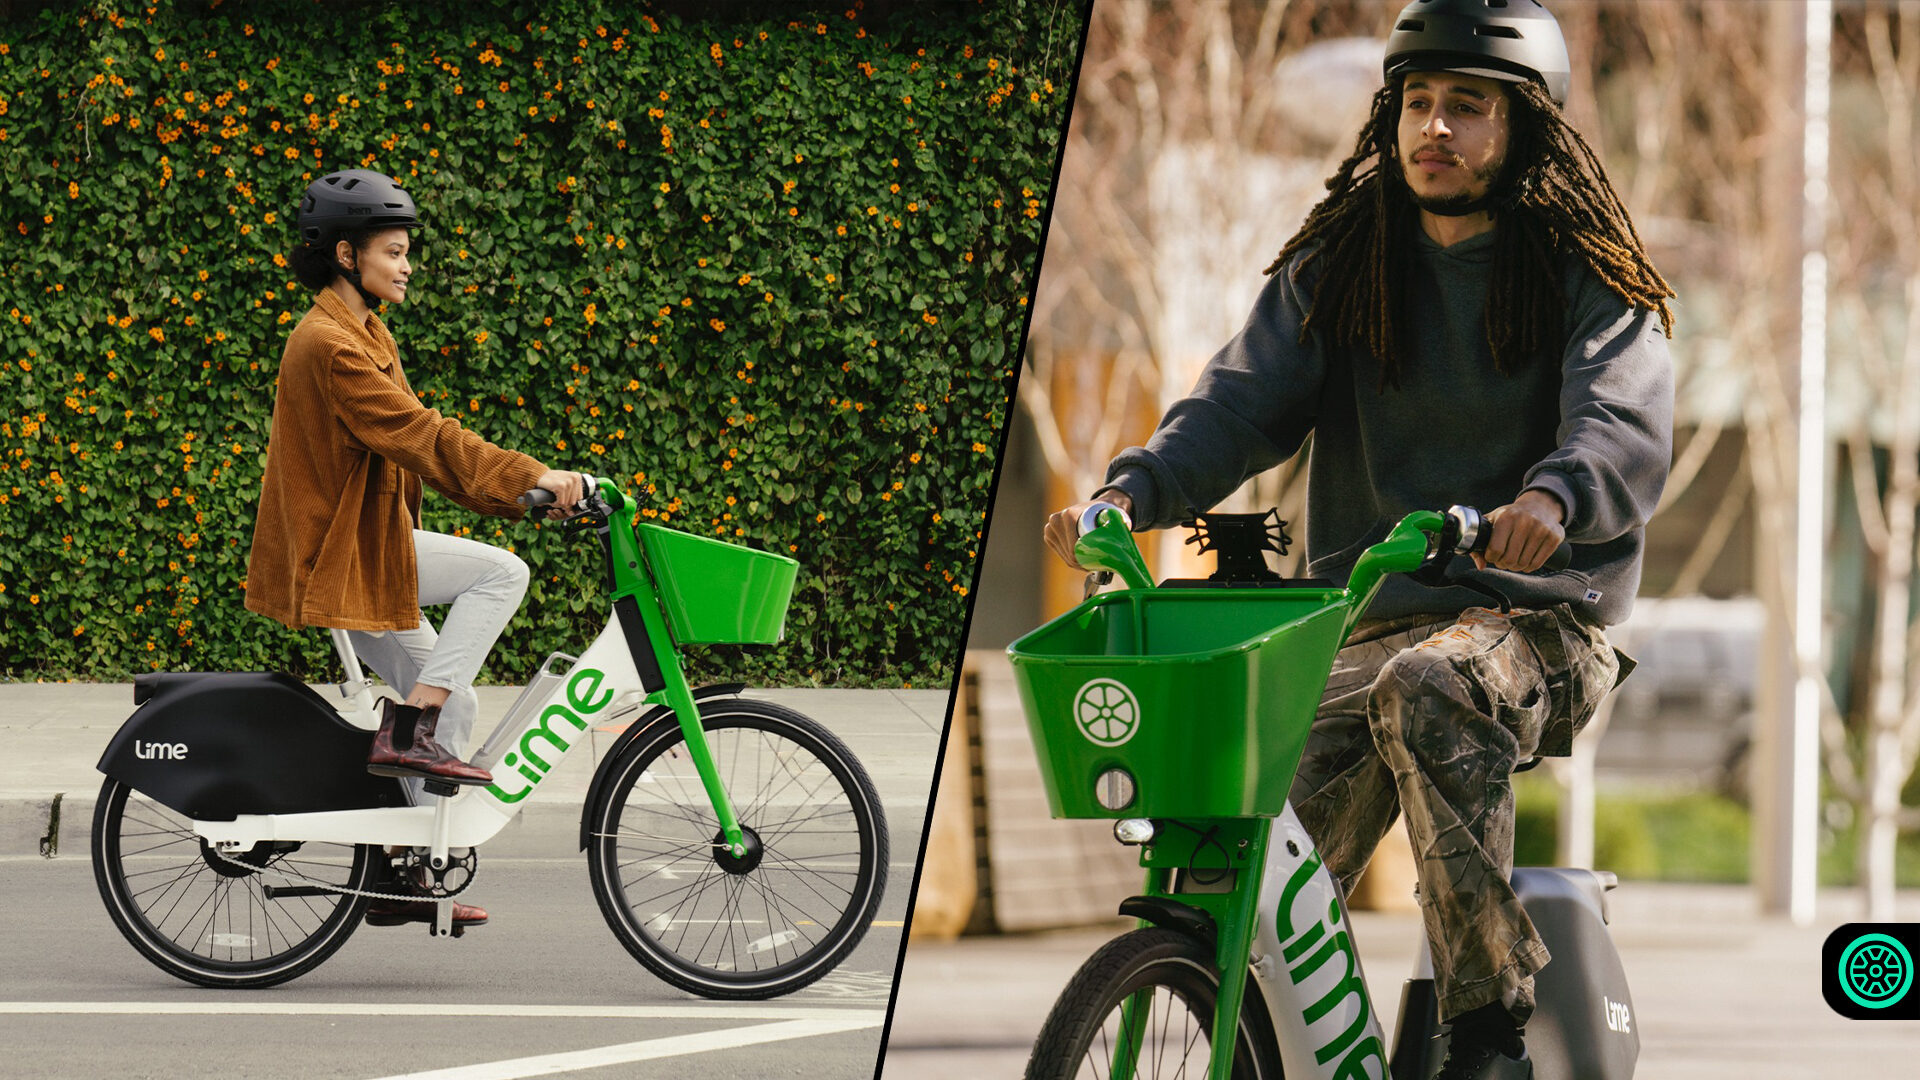 Lime yeni otomatik şanzımana sahip elektrikli bisikleti tanıttı 1